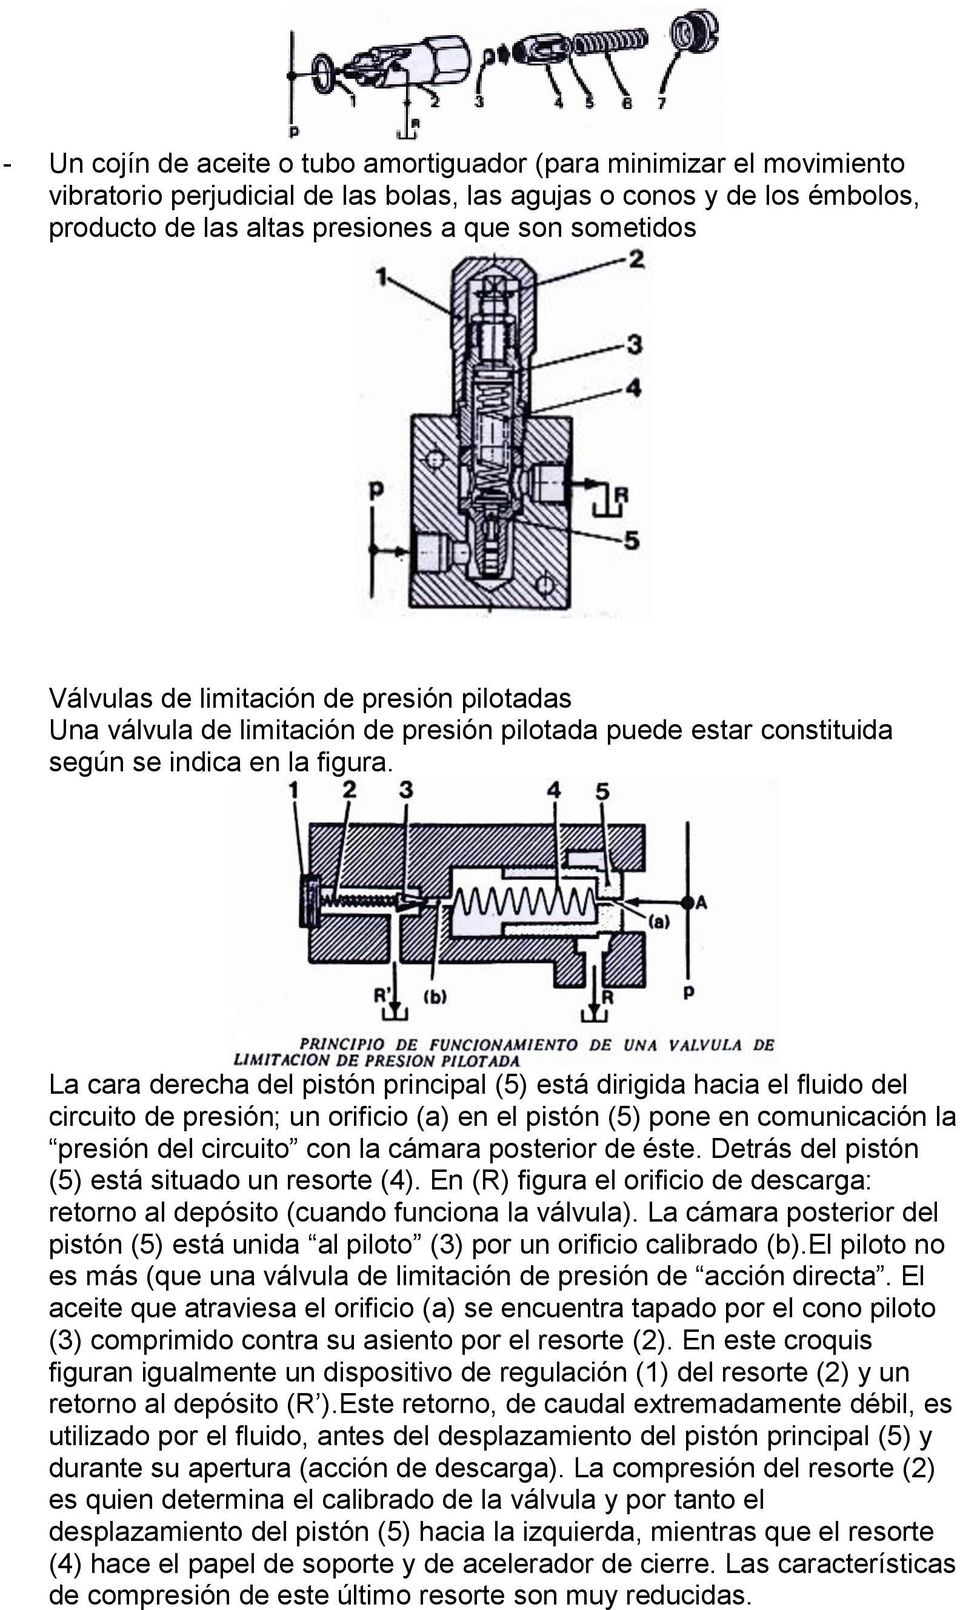 La cara derecha del pistón principal (5) está dirigida hacia el fluido del circuito de presión; un orificio (a) en el pistón (5) pone en comunicación la presión del circuito con la cámara posterior